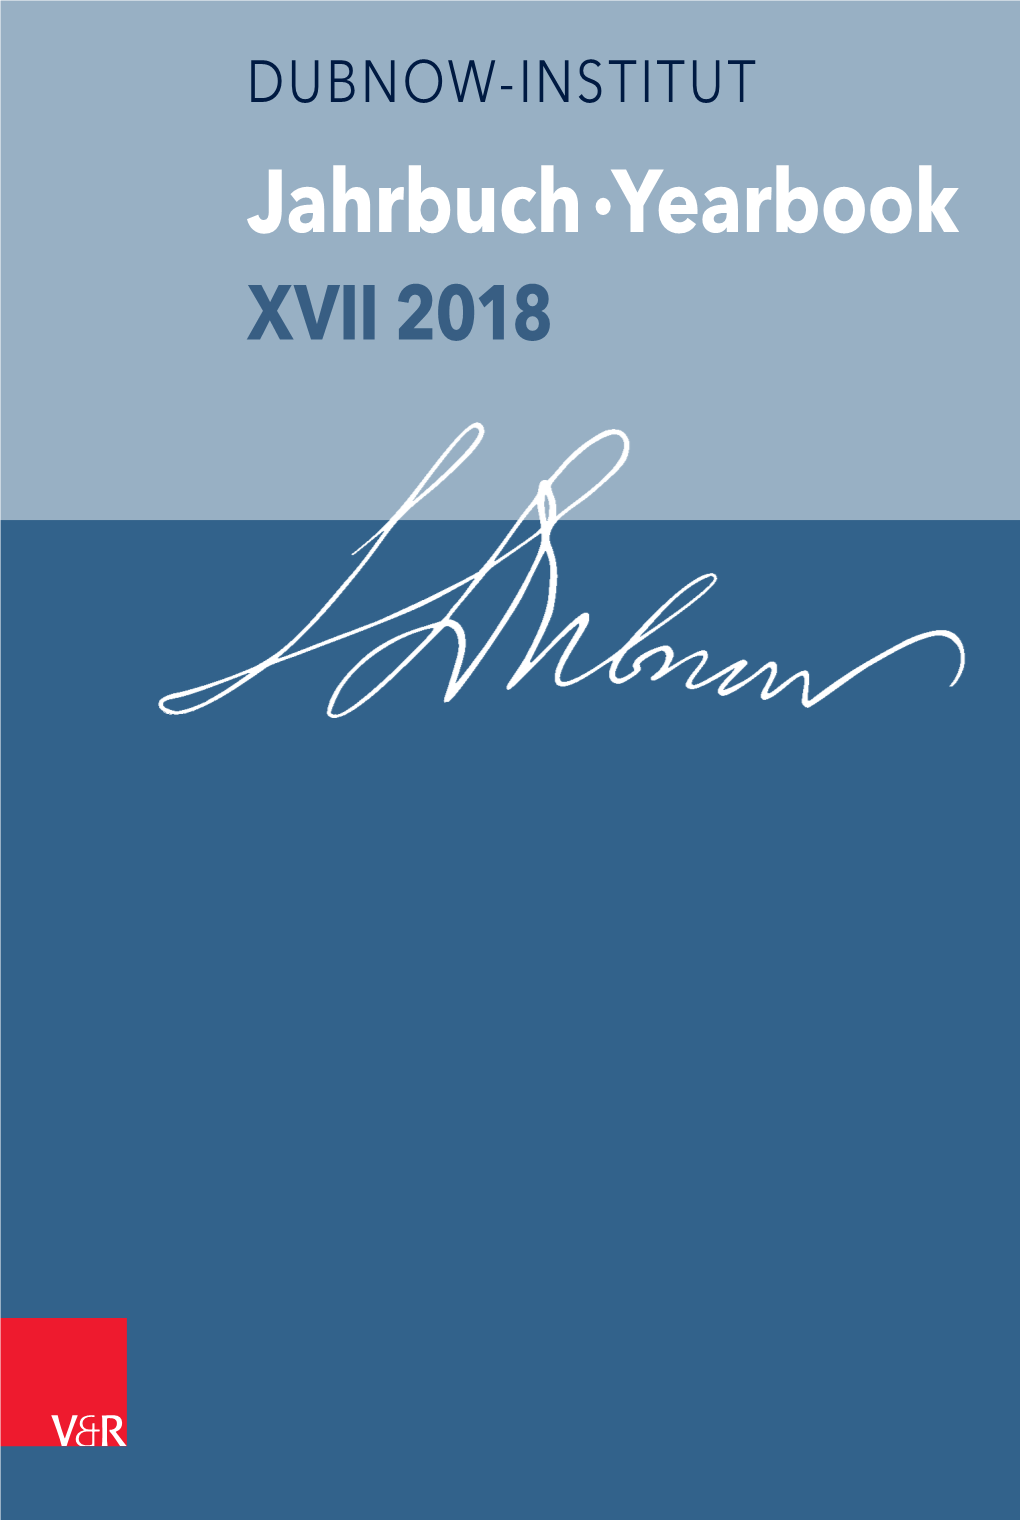 Jahrbuch Des Dubnow-Instituts /Dubnow Institute Yearbook XVII/2018